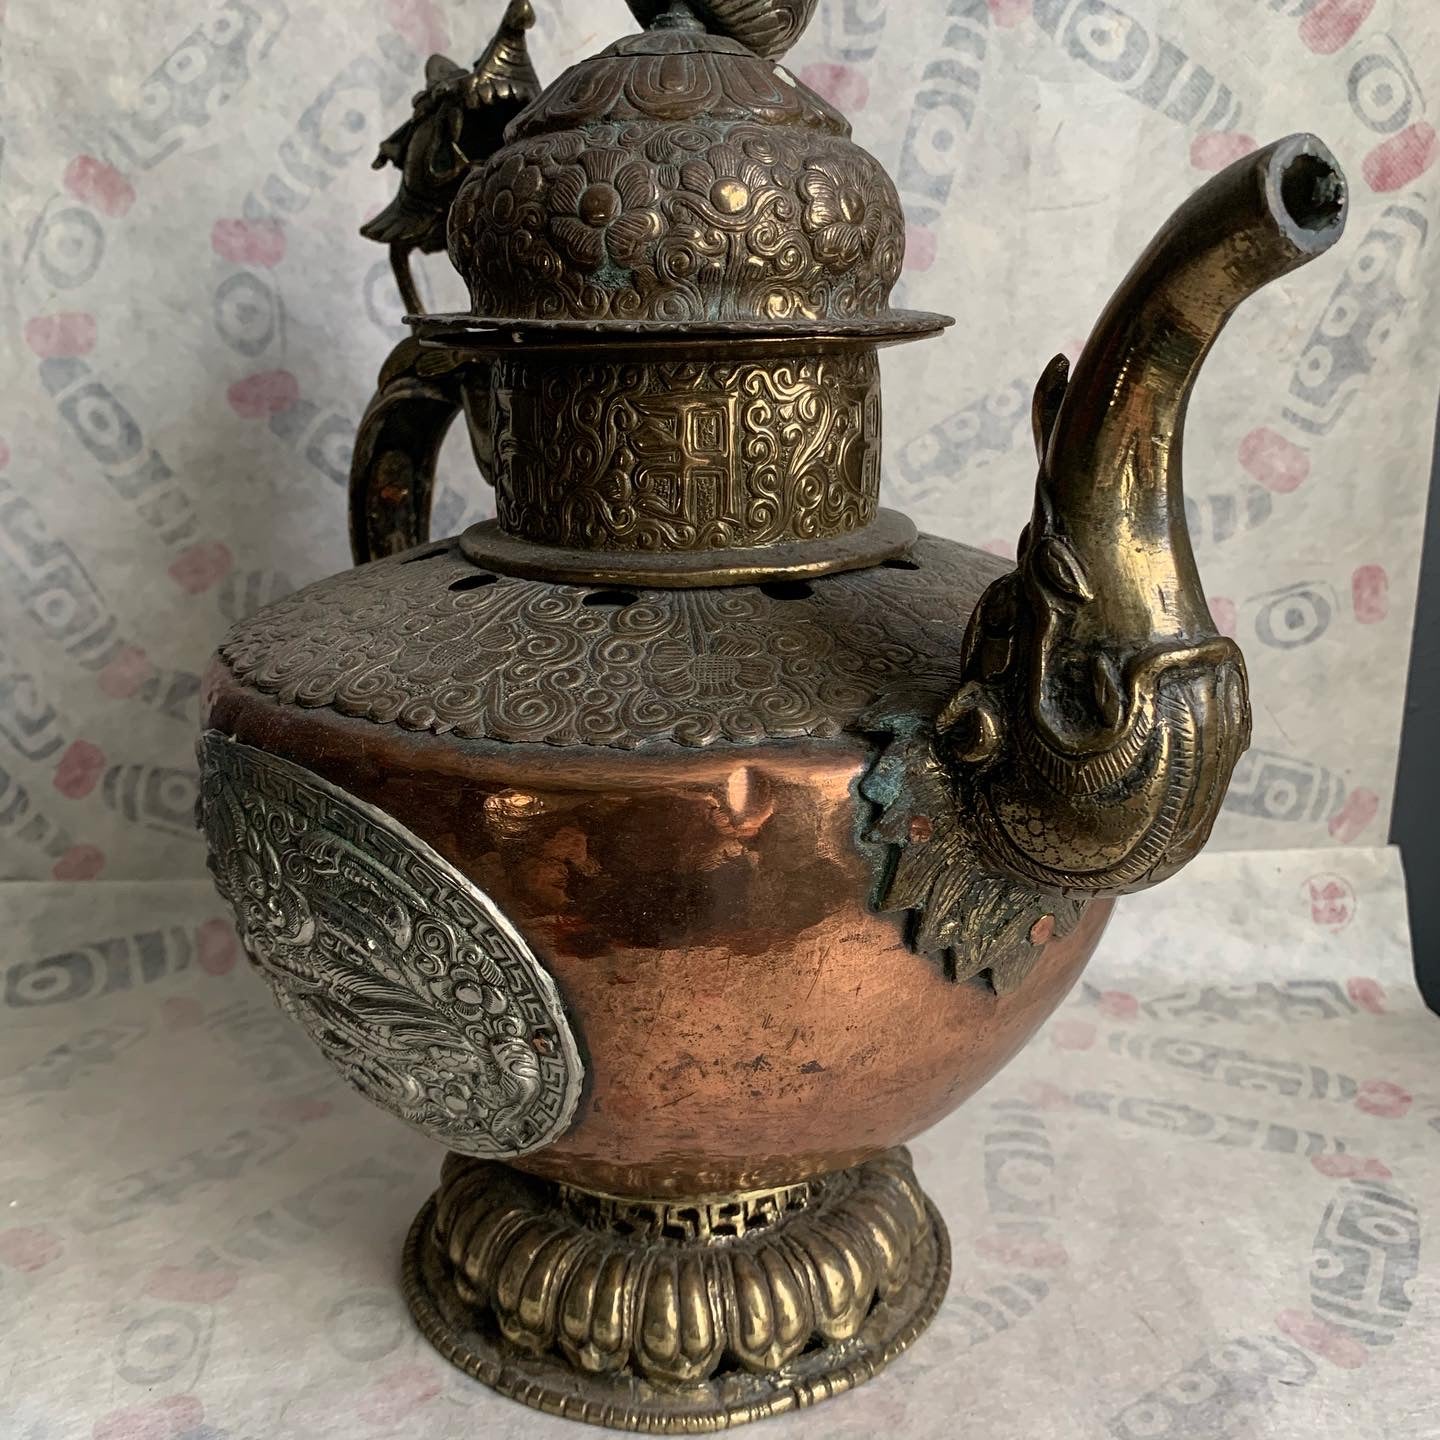 An antique Tibetan Teapot